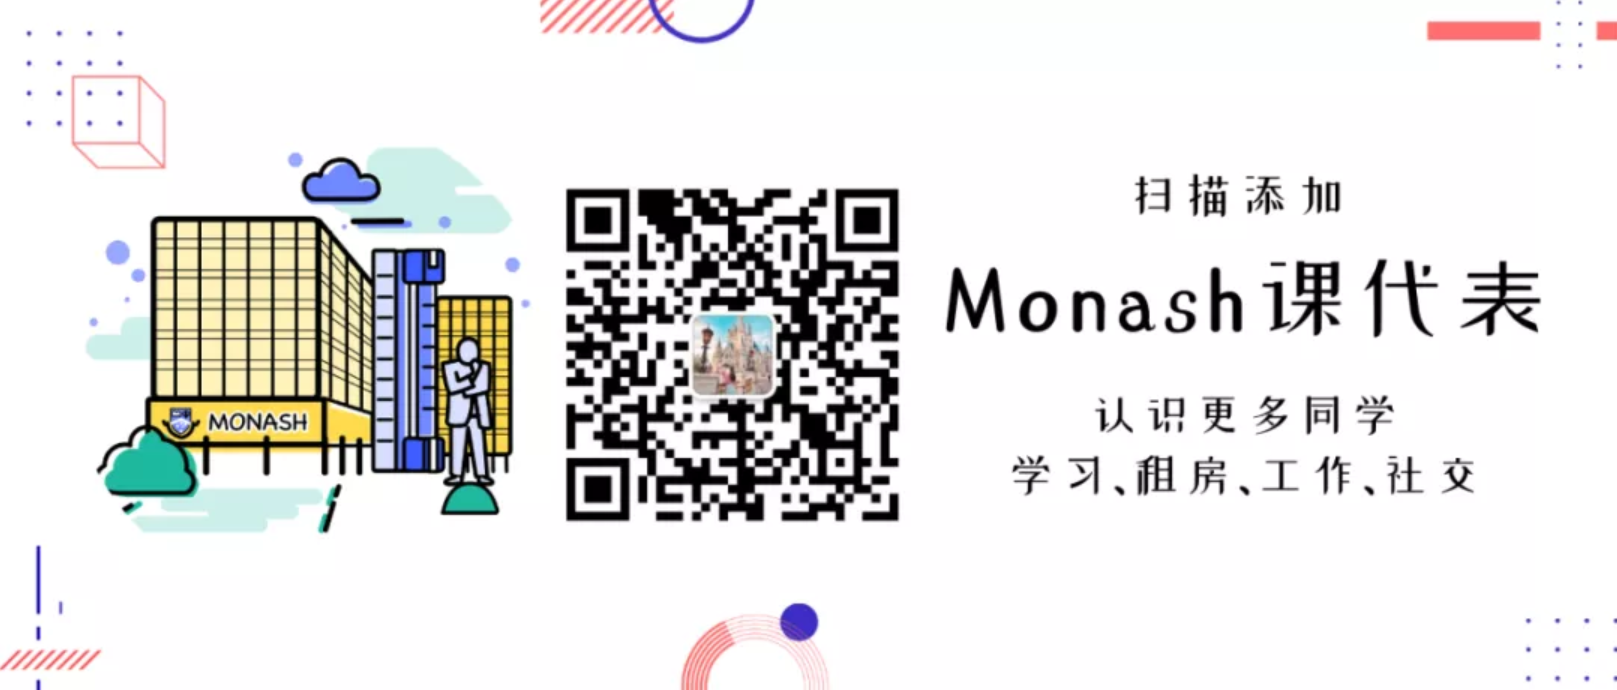 Monash1